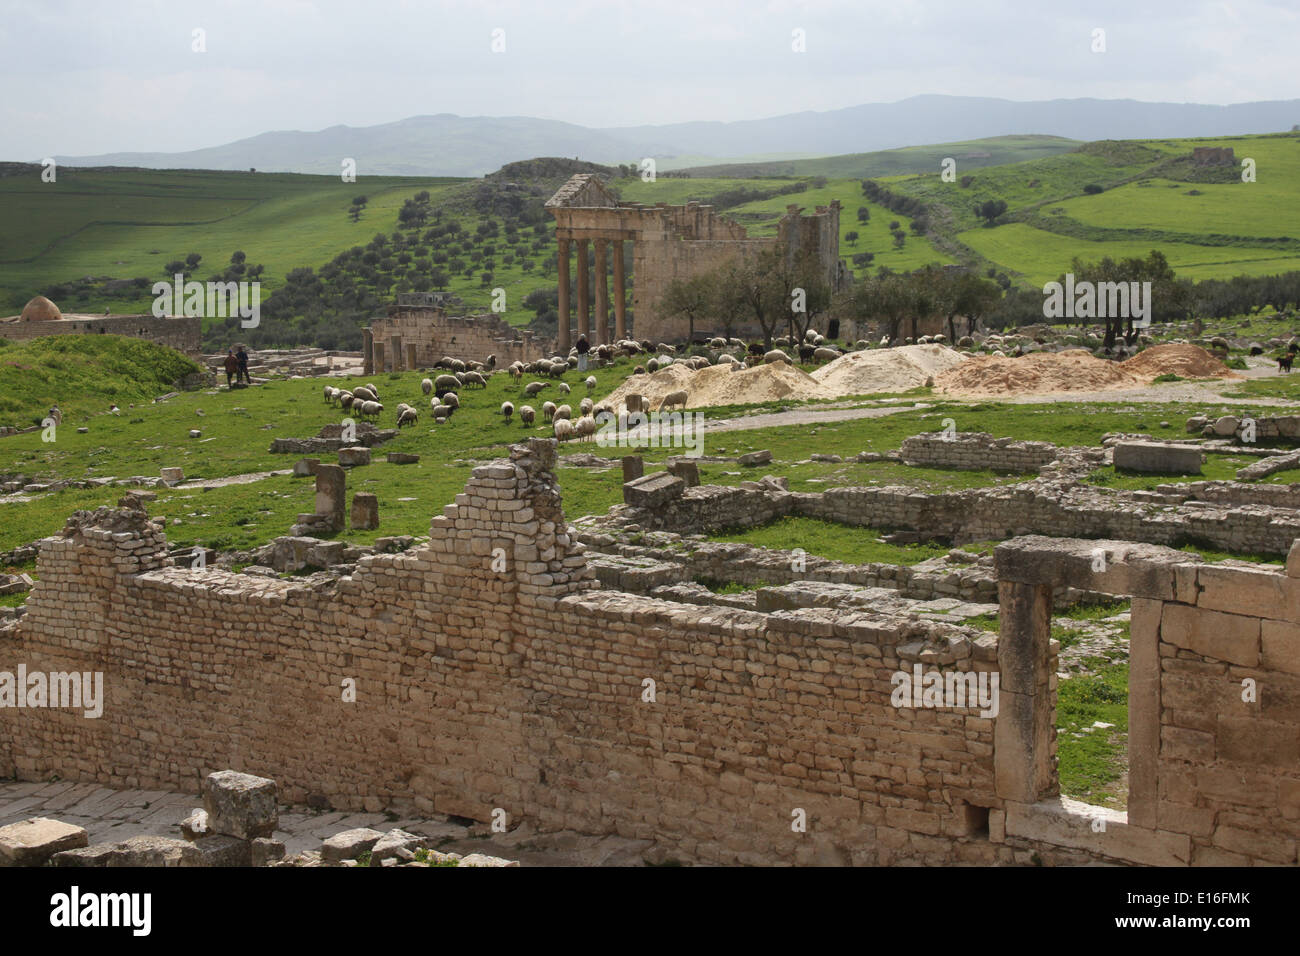 Vue de la ville romaine de Dougga et la campagne environnante, la Tunisie Banque D'Images